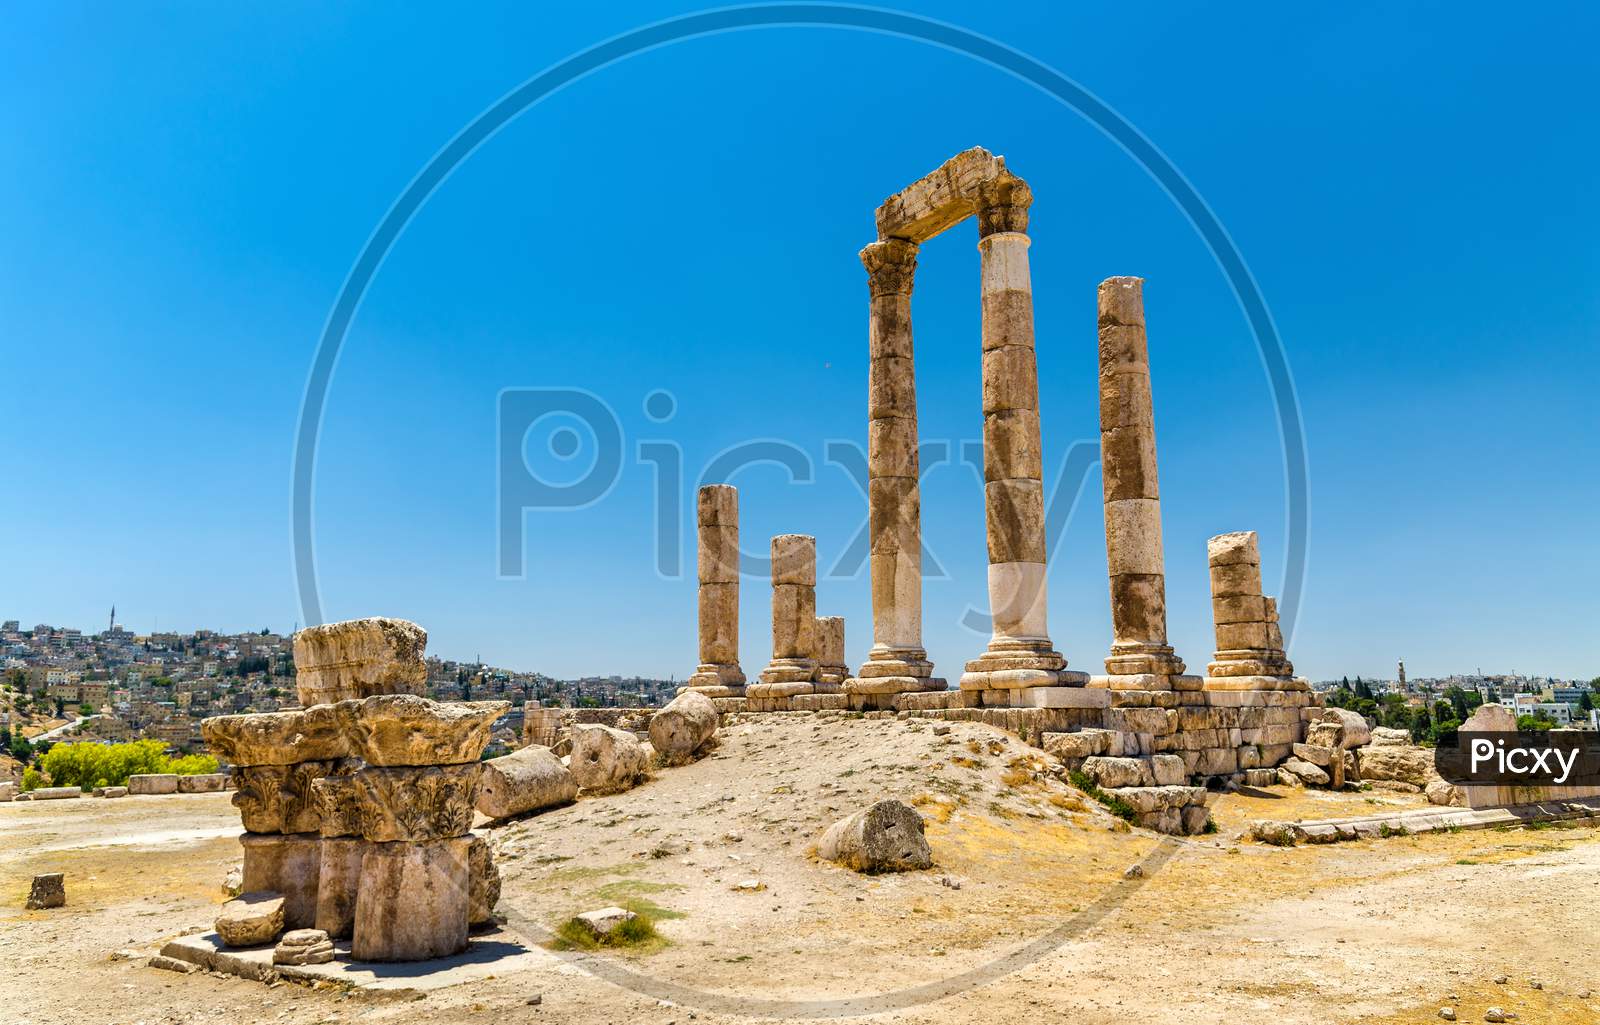 Temple Of Hercules At The Amman Citadel, Jabal Al-Qal'A